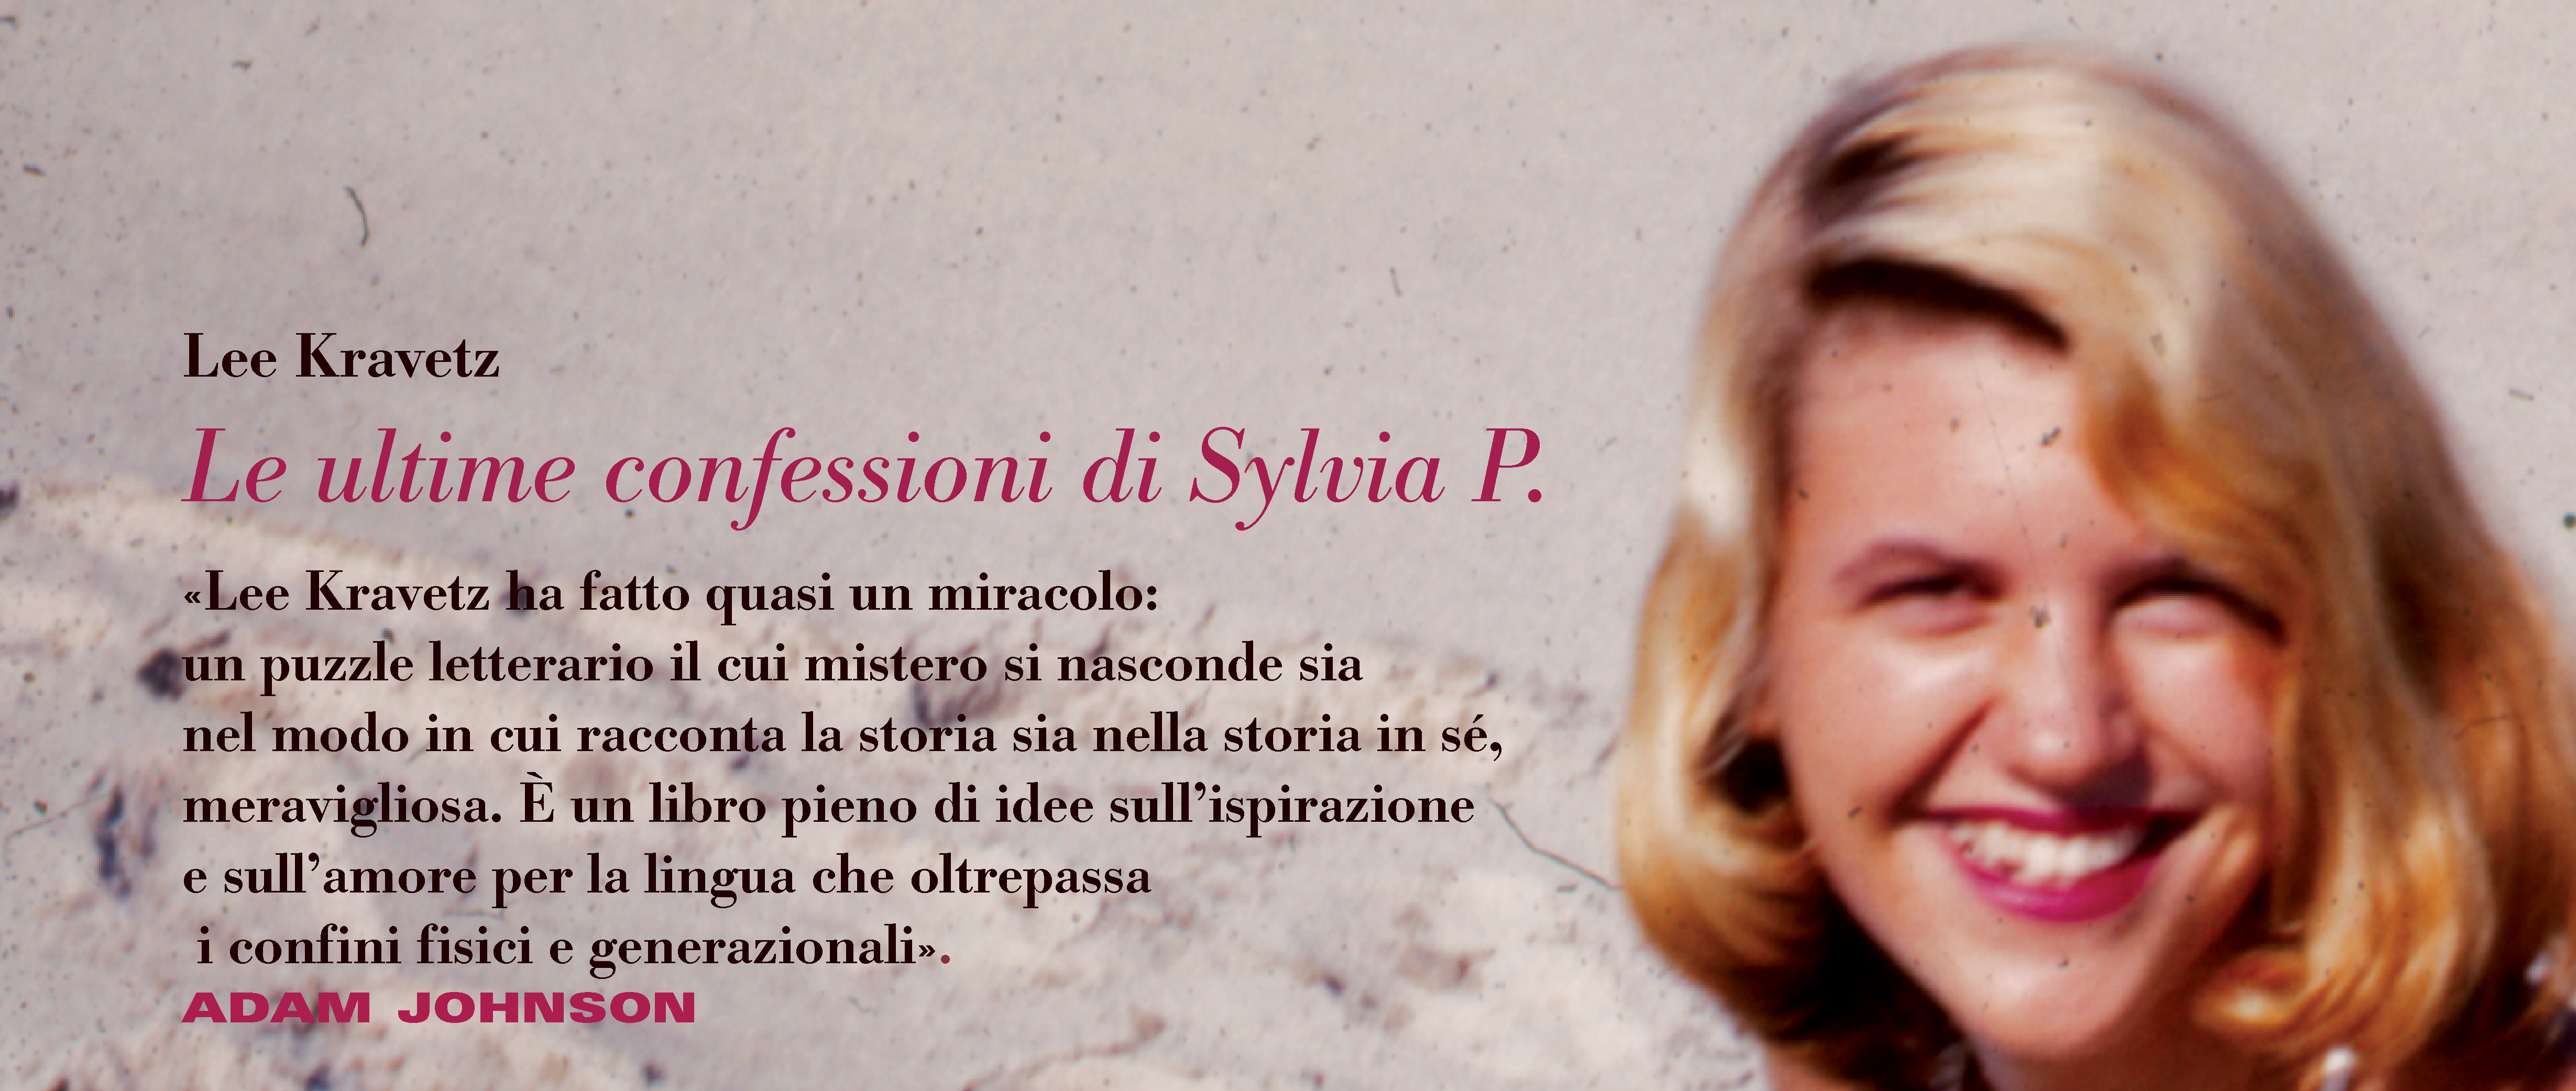 Le ultime confessioni di Sylvia P.